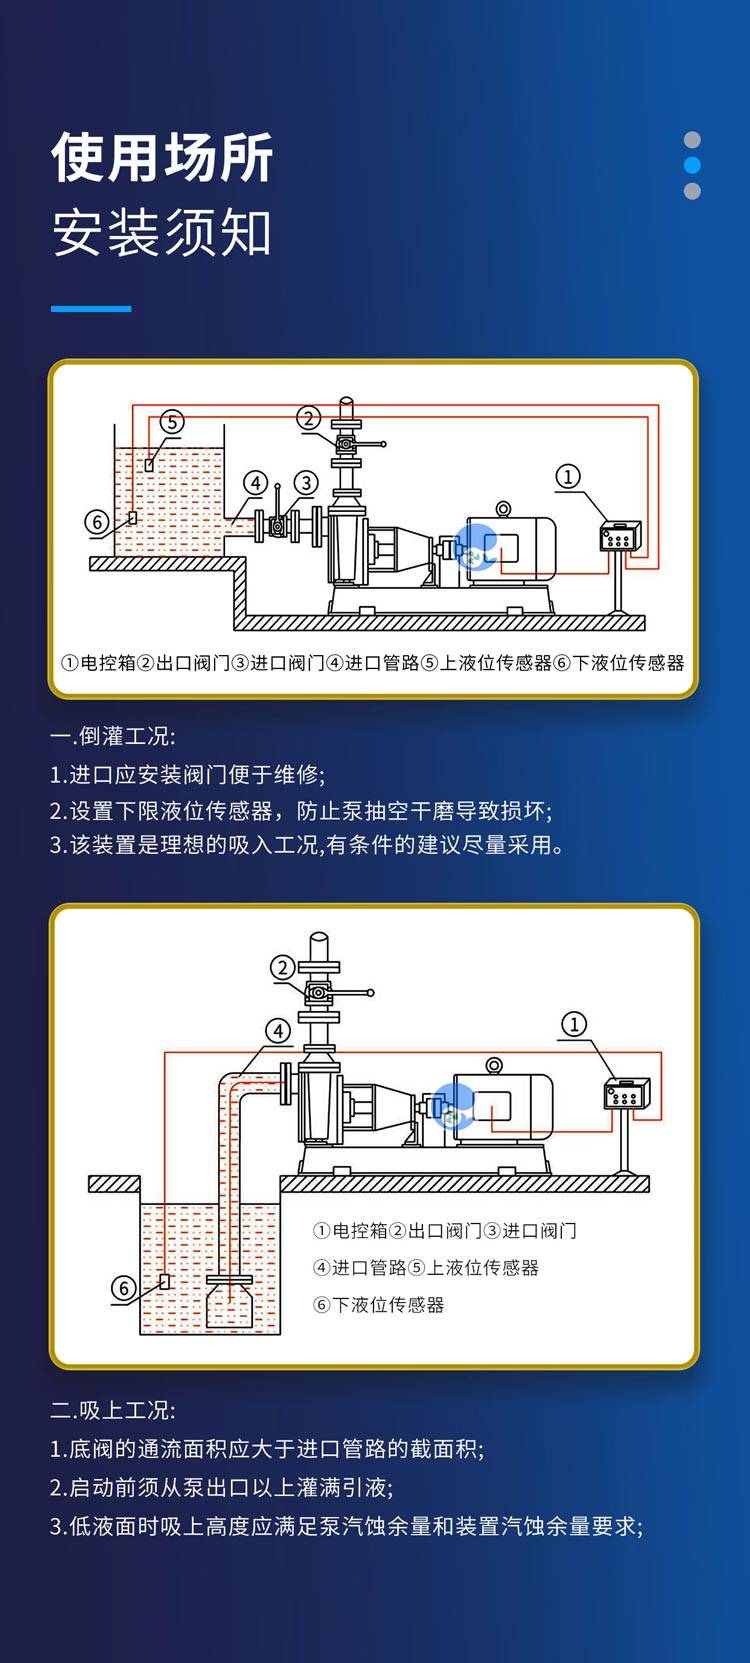 专为低槽位工况研制,fzb型氟塑料自吸泵泵机安装于槽罐上方,安装操作